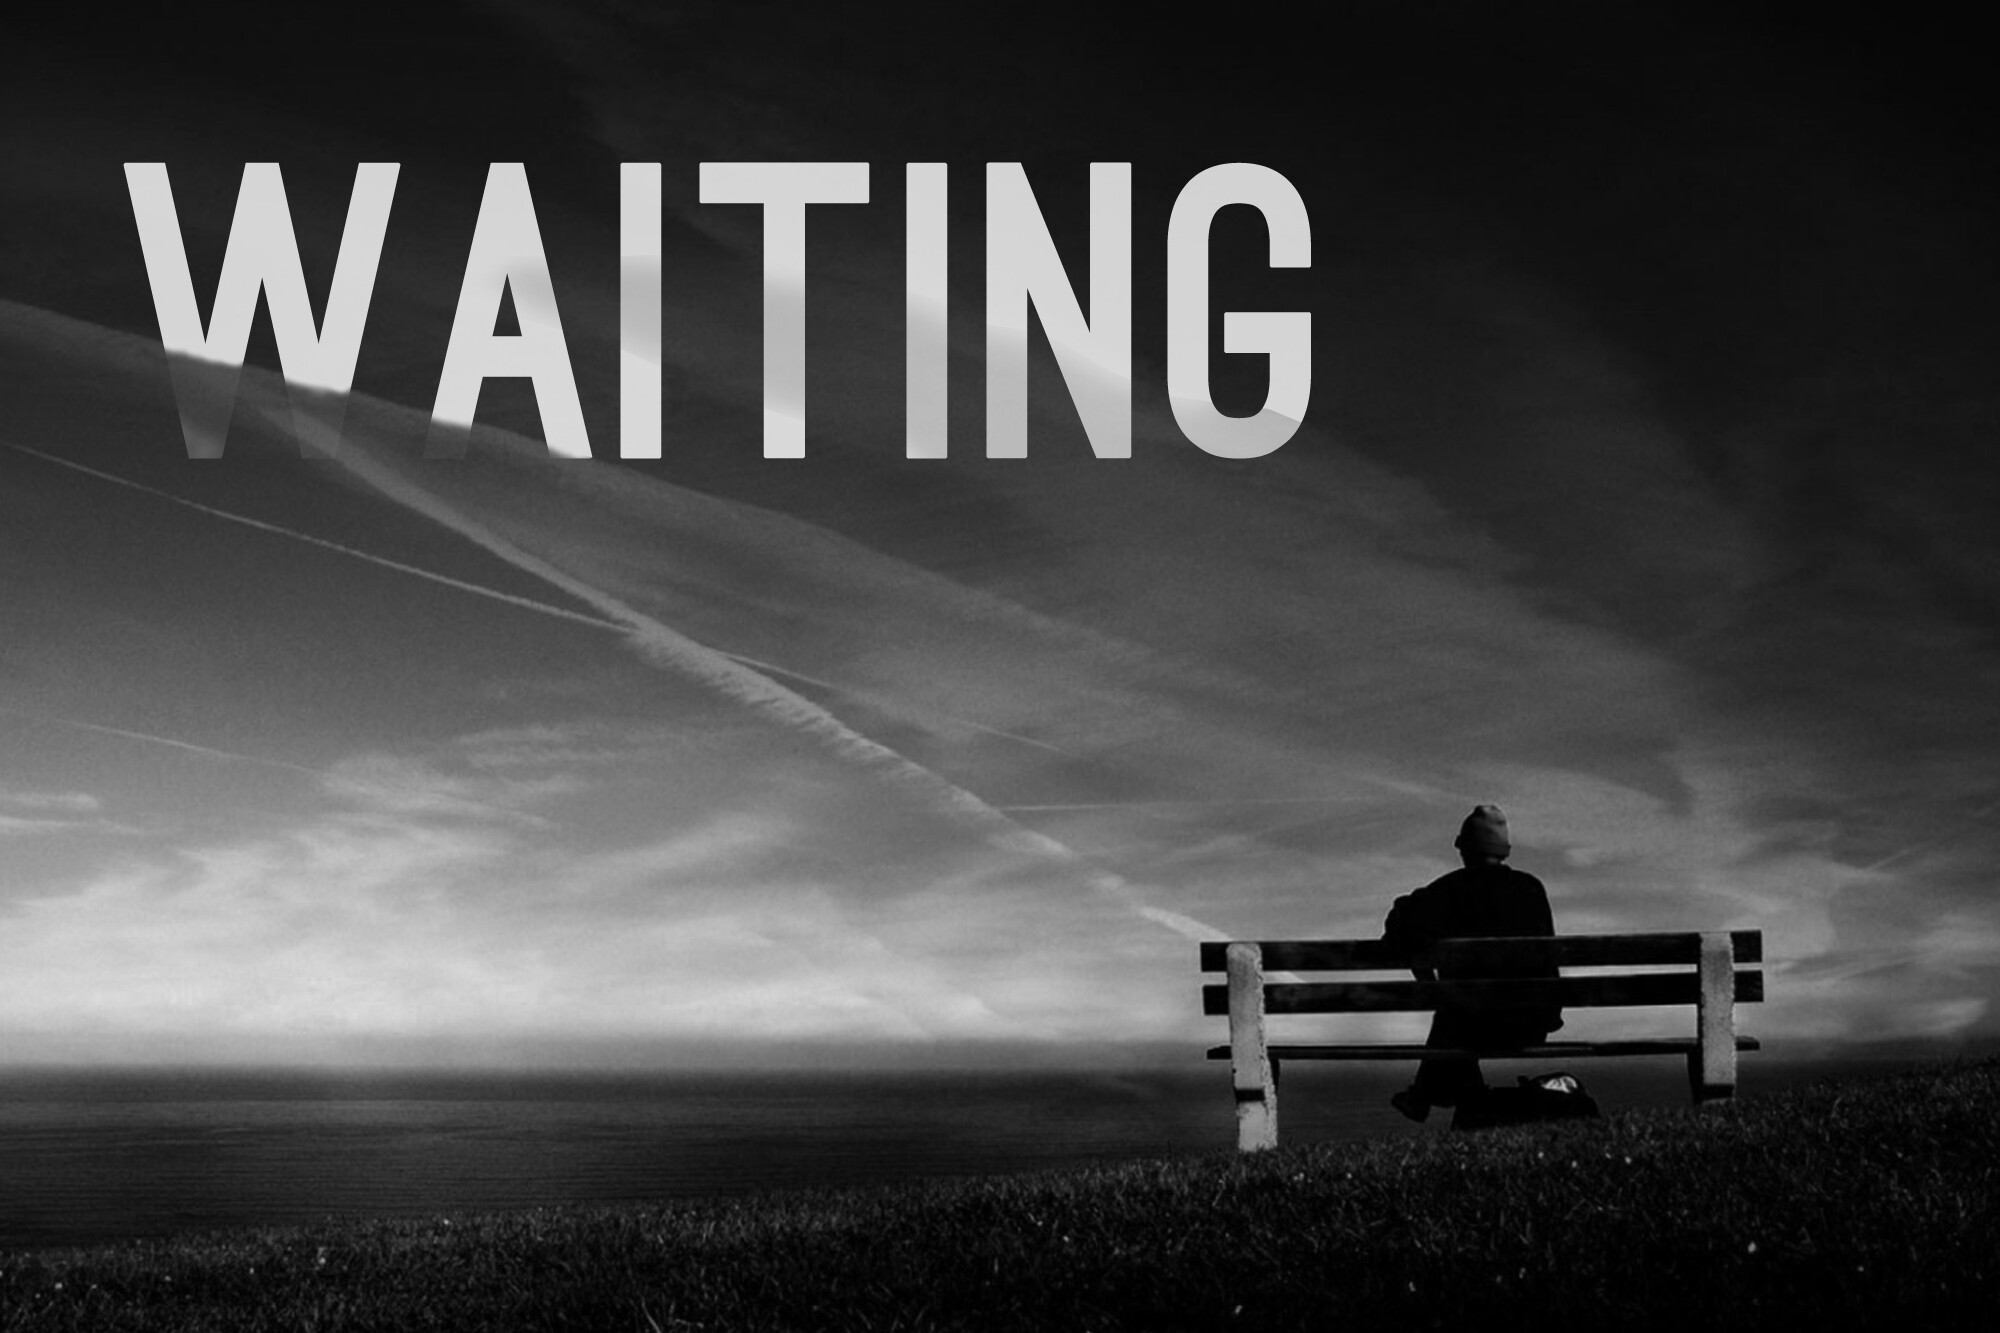 "Waiting for God's Leading" - Steve Turnbull